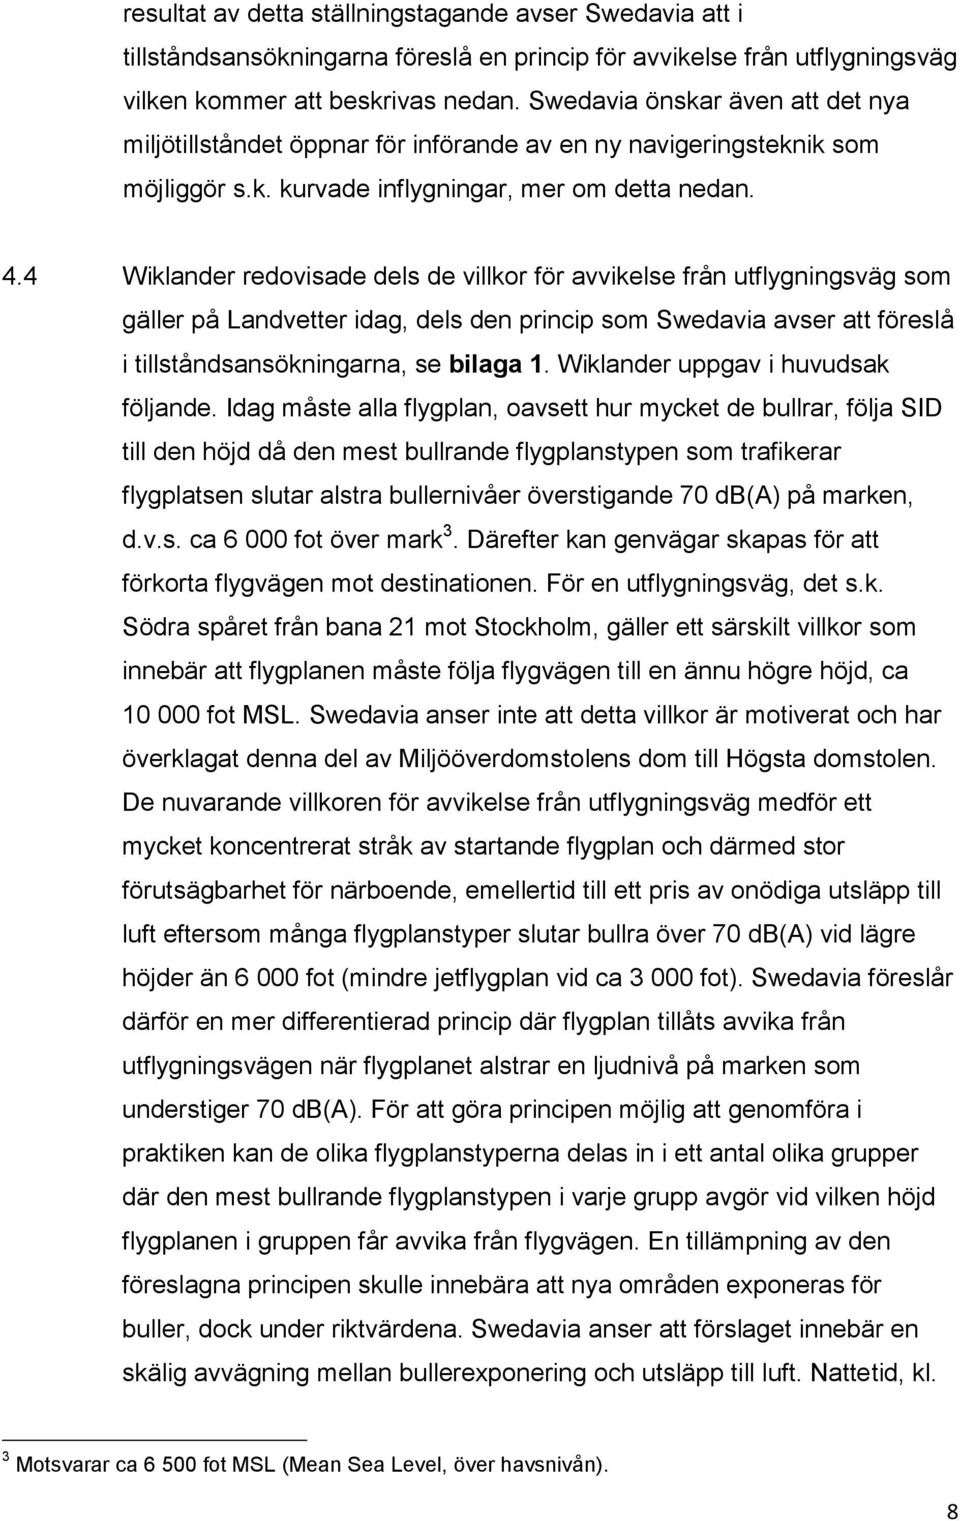 4 Wiklander redovisade dels de villkor för avvikelse från utflygningsväg som gäller på Landvetter idag, dels den princip som Swedavia avser att föreslå i tillståndsansökningarna, se bilaga 1.